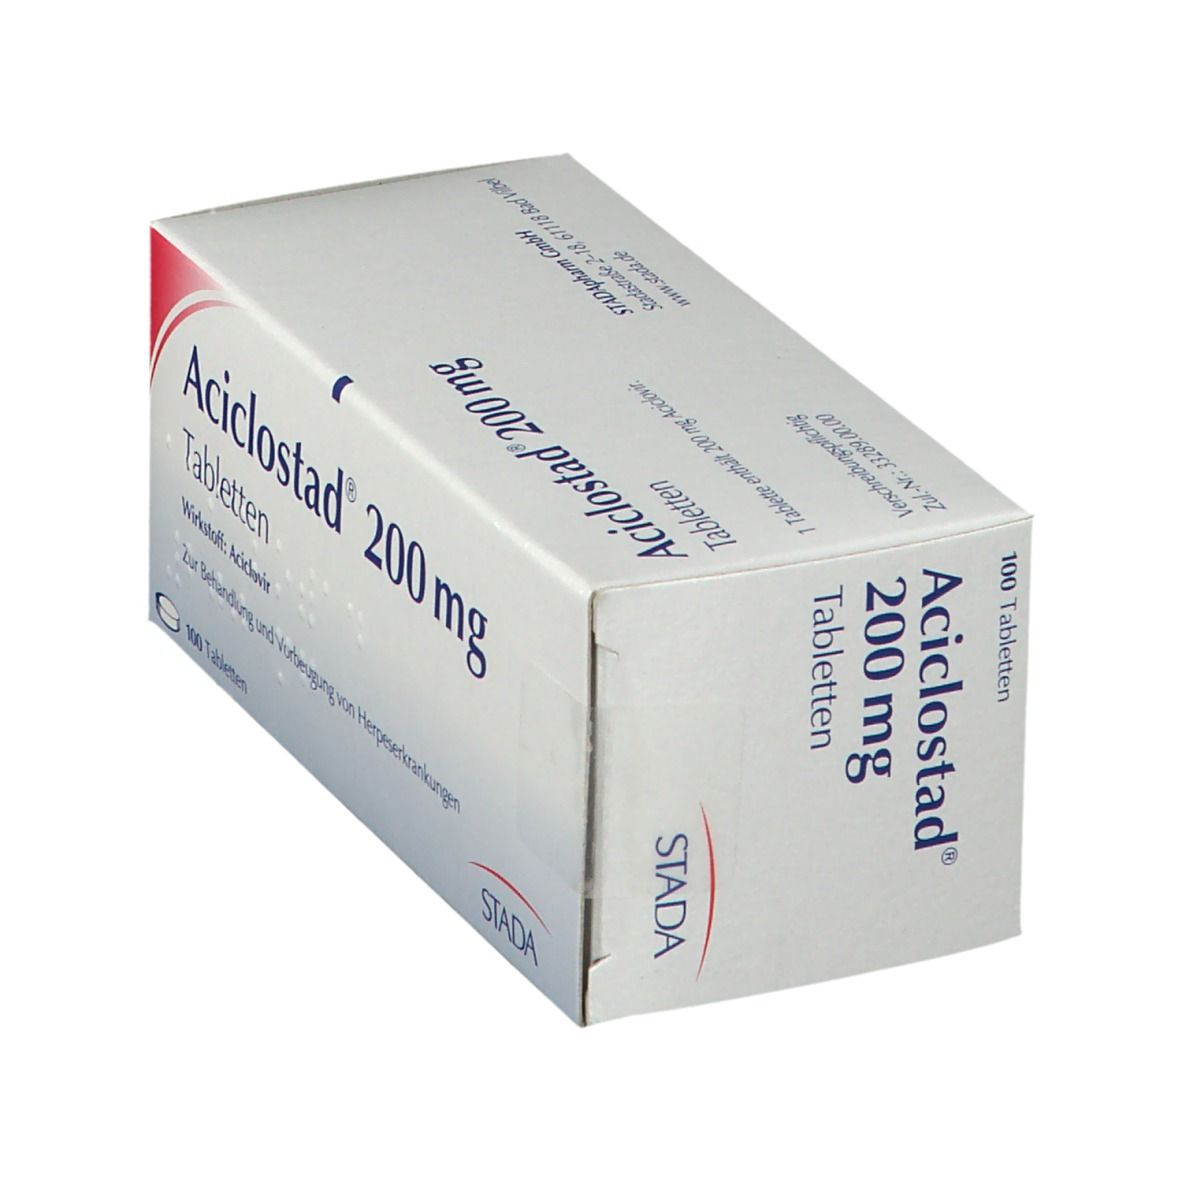 Aciclostad® 200 mg